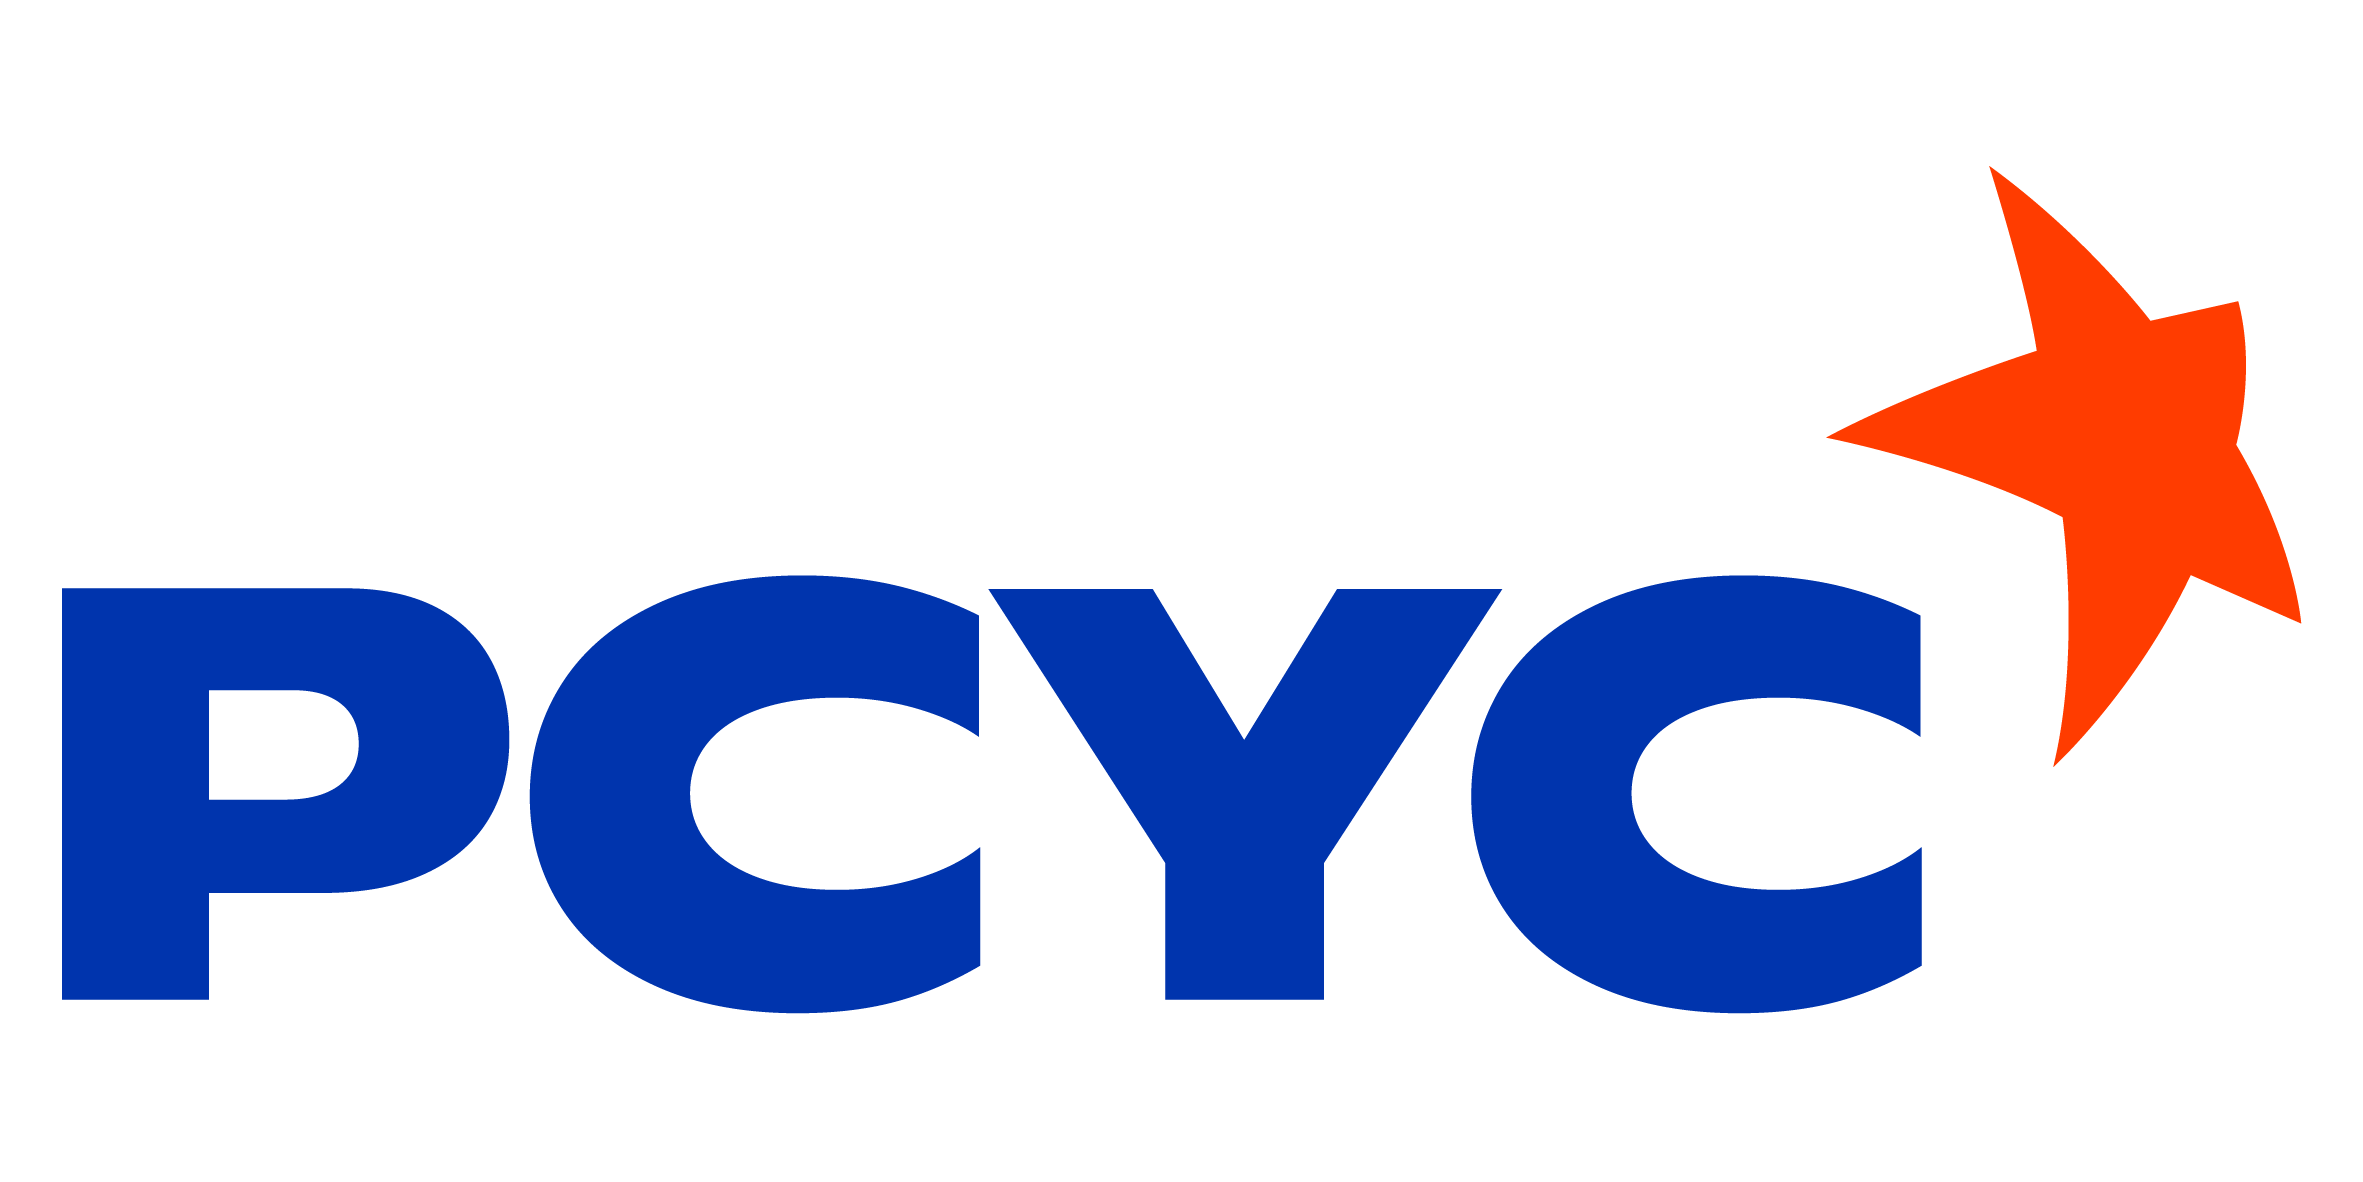 PCYC NSW